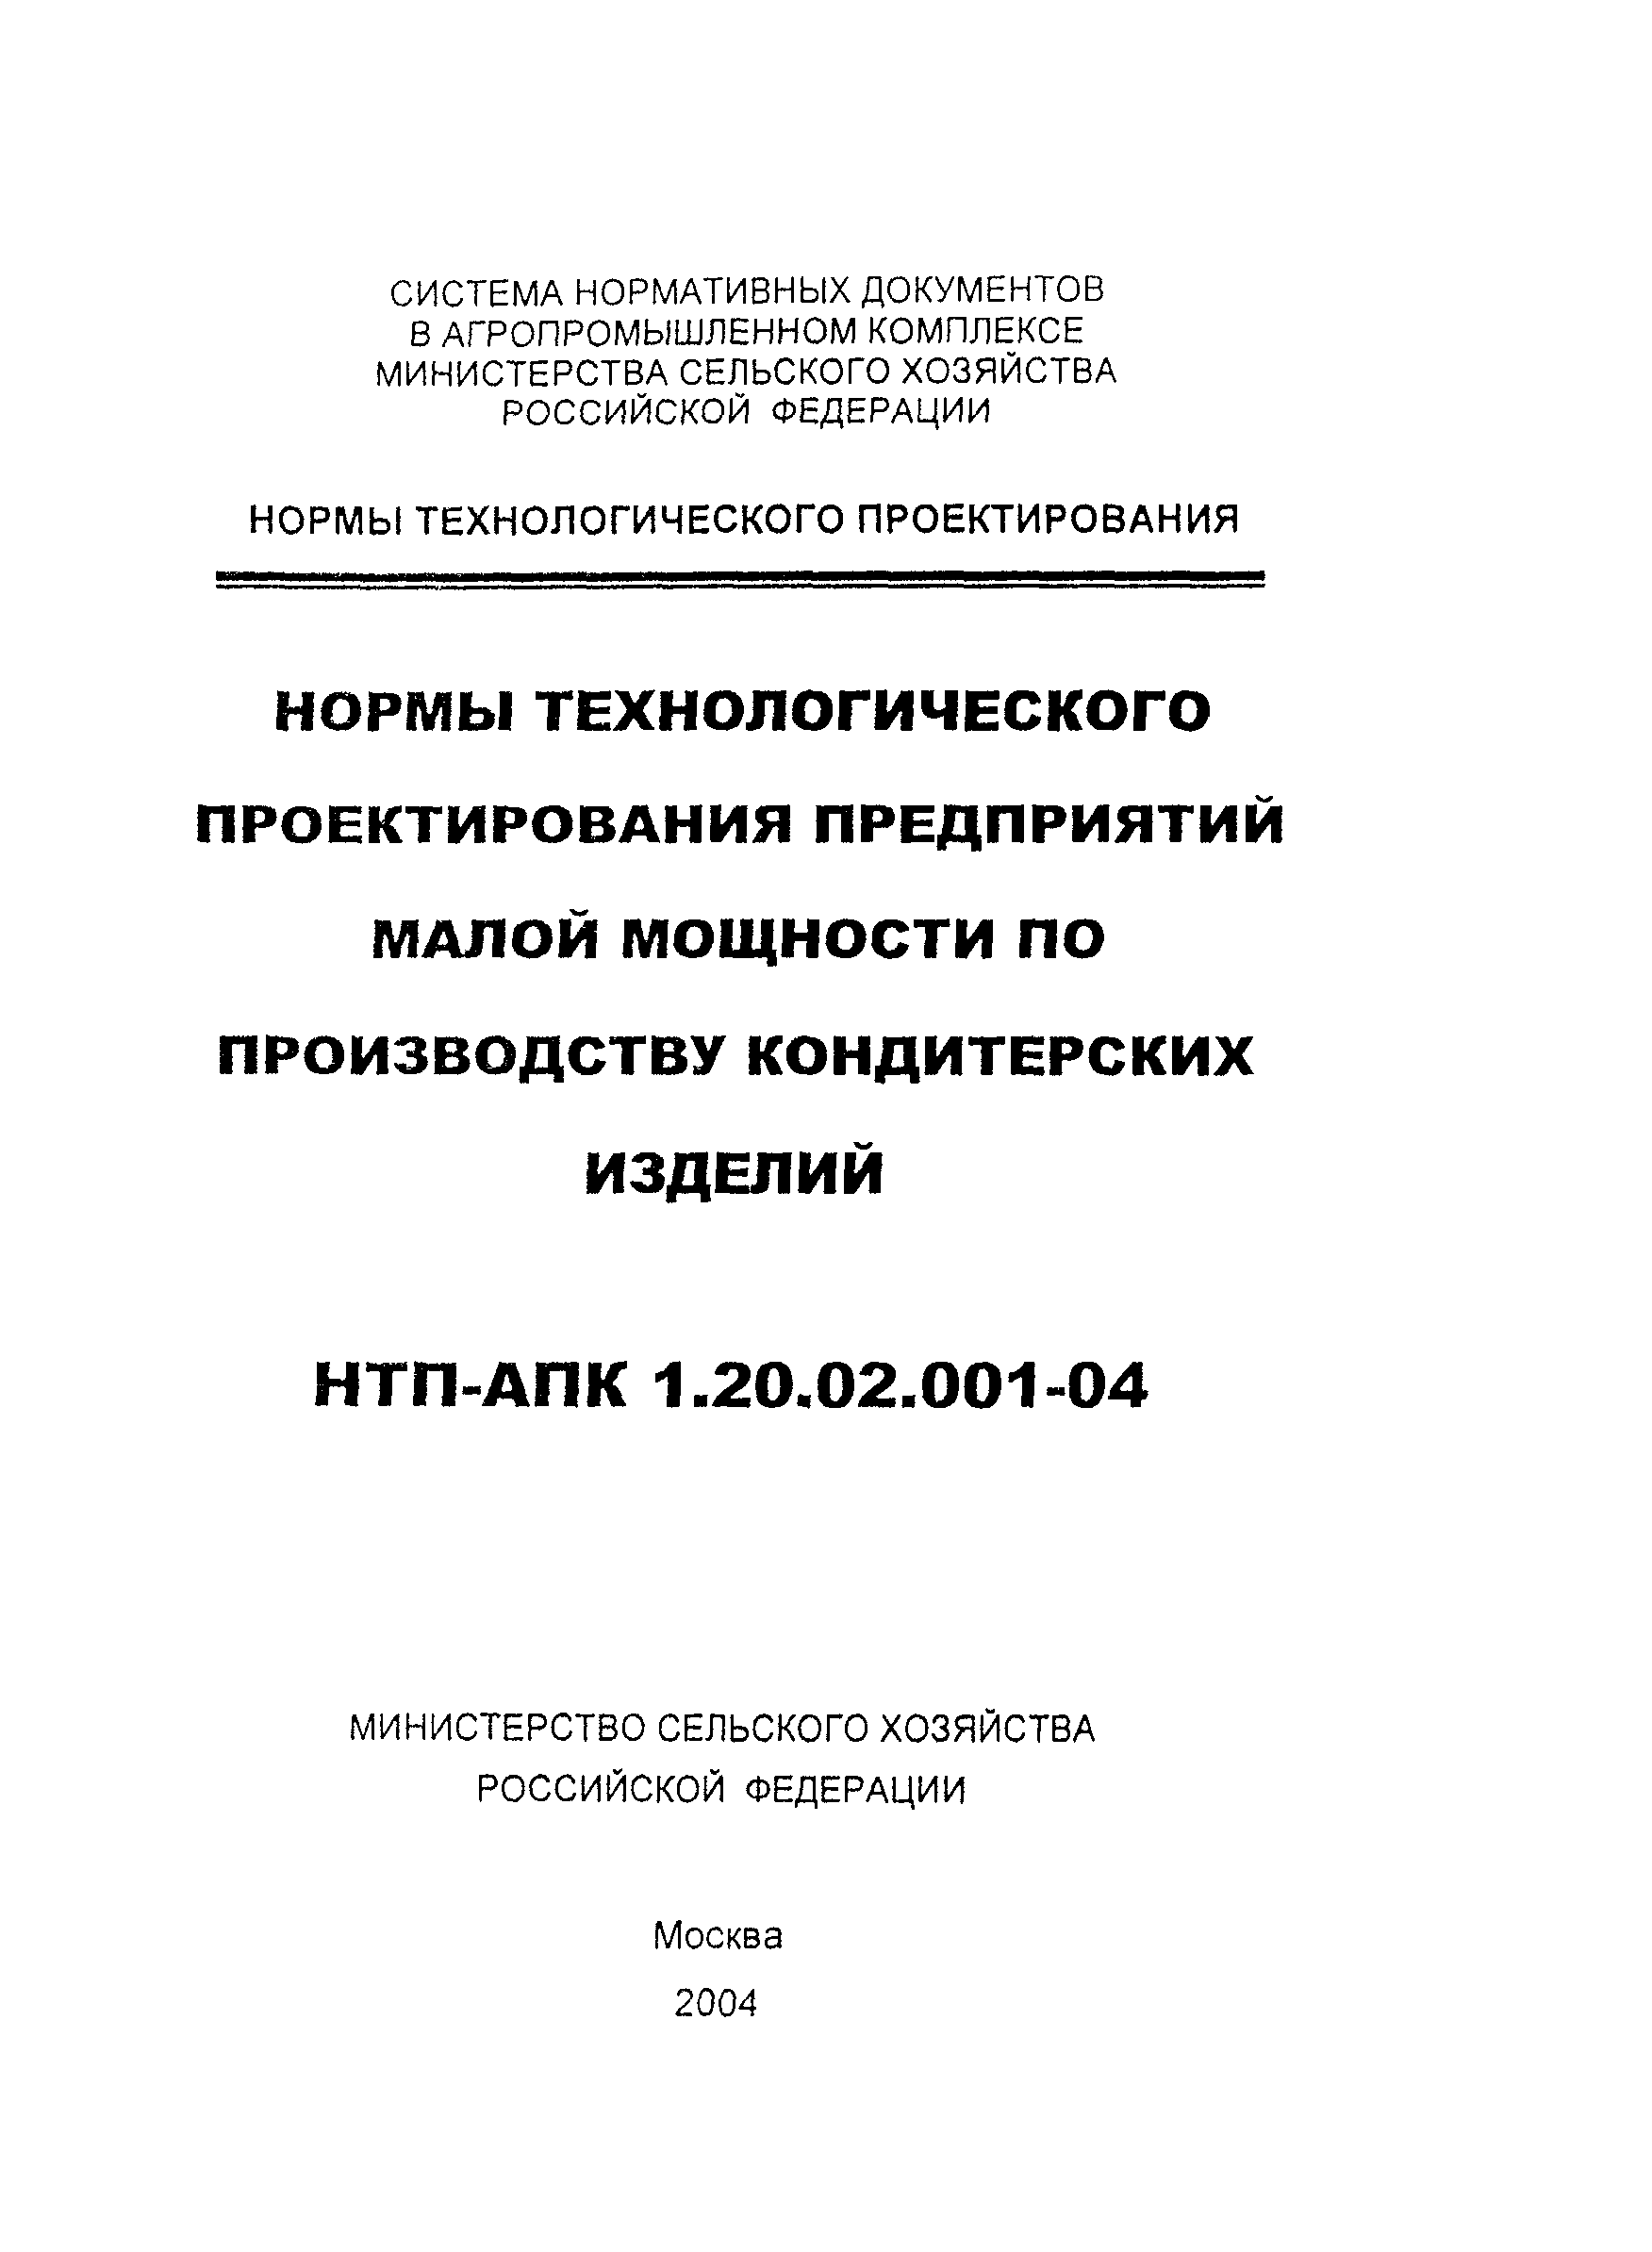 НТП АПК 1.20.02.001-04